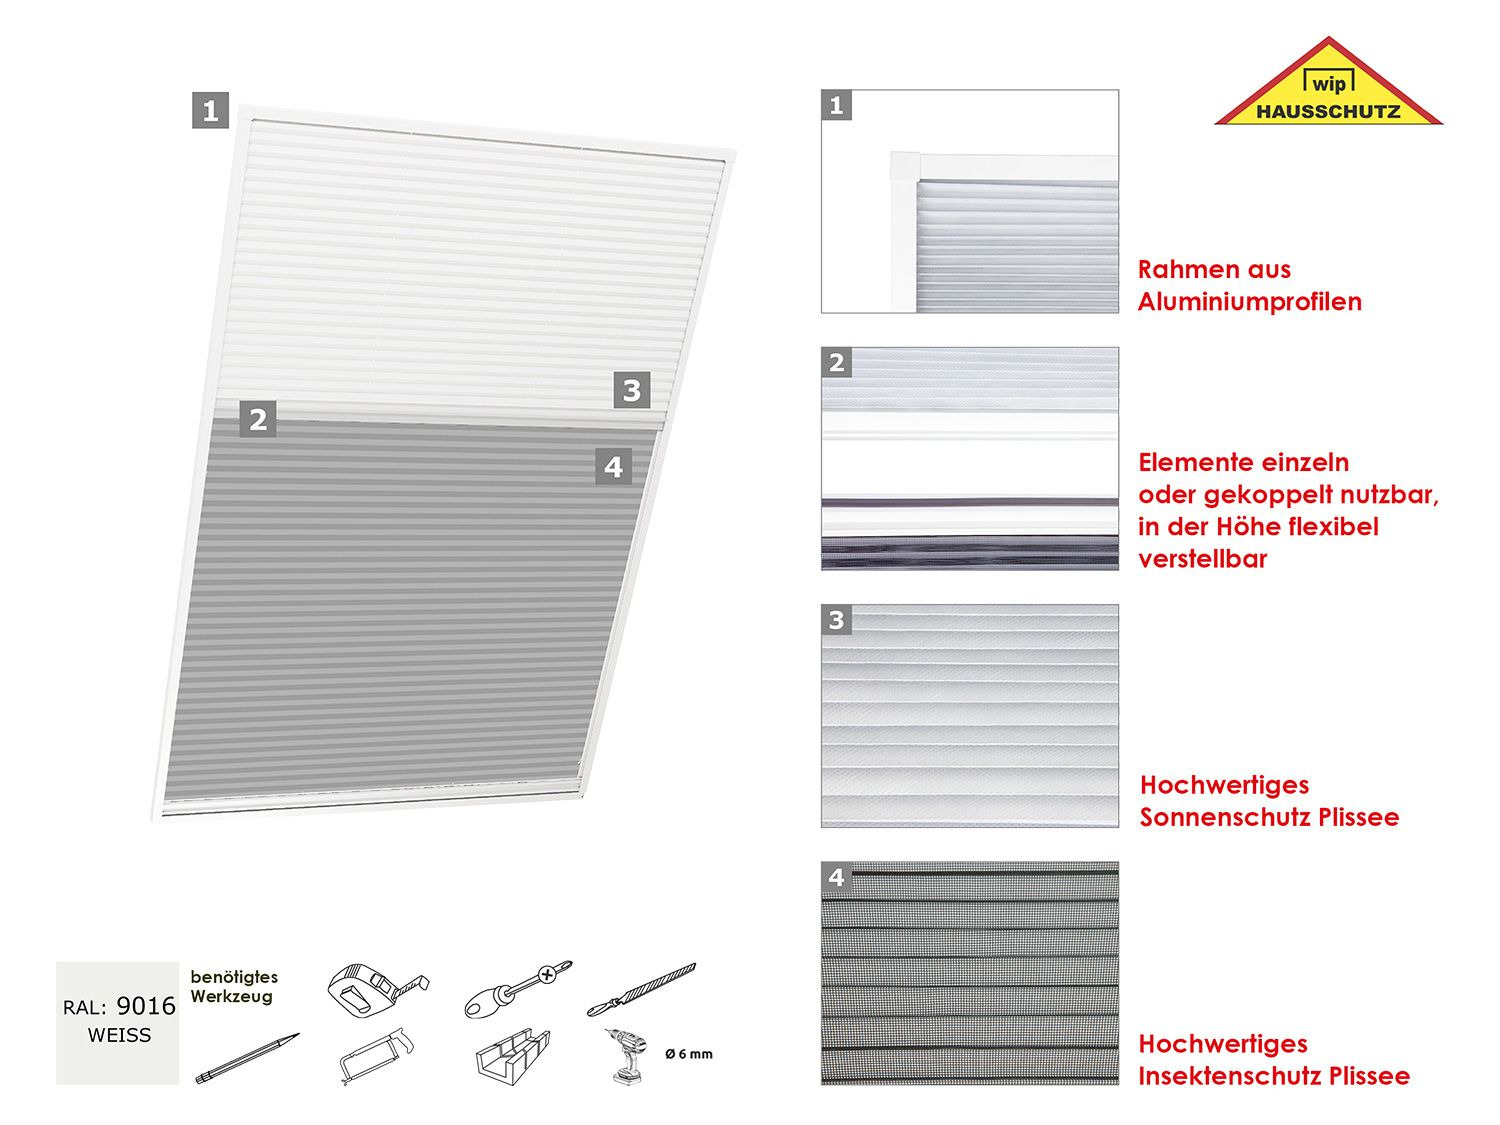 Insektenschut… u. 2in1-Dachfenster-Plissee, wip Sonnen-